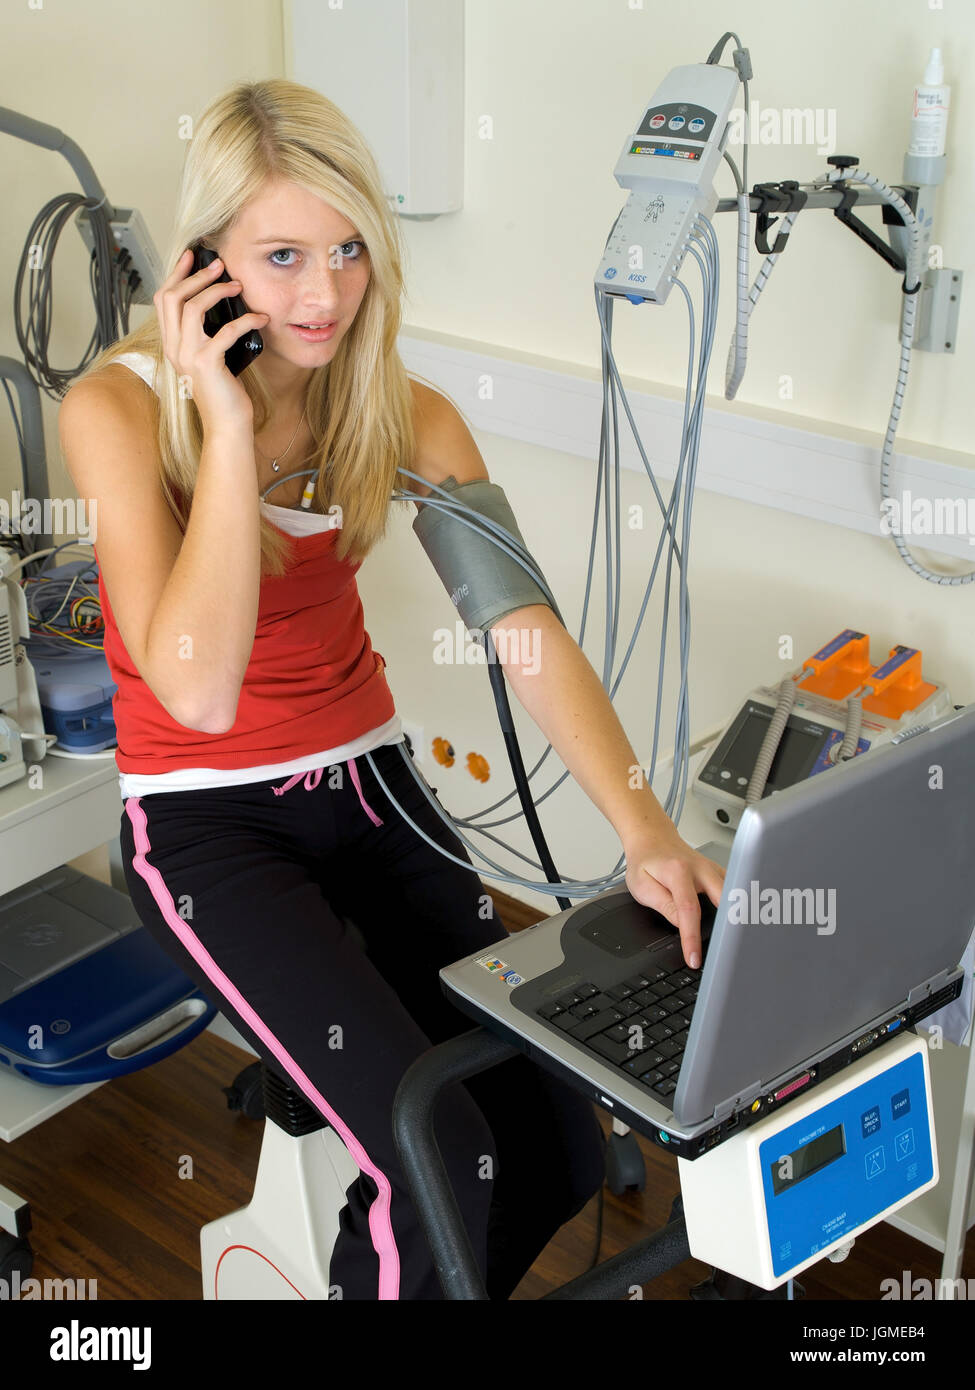 Giovane donna svolge un ergometro test nella pratica medica - una giovane donna su un ergometro in chirurgia, Junge Frau führt einen Ergometer-Test Foto Stock